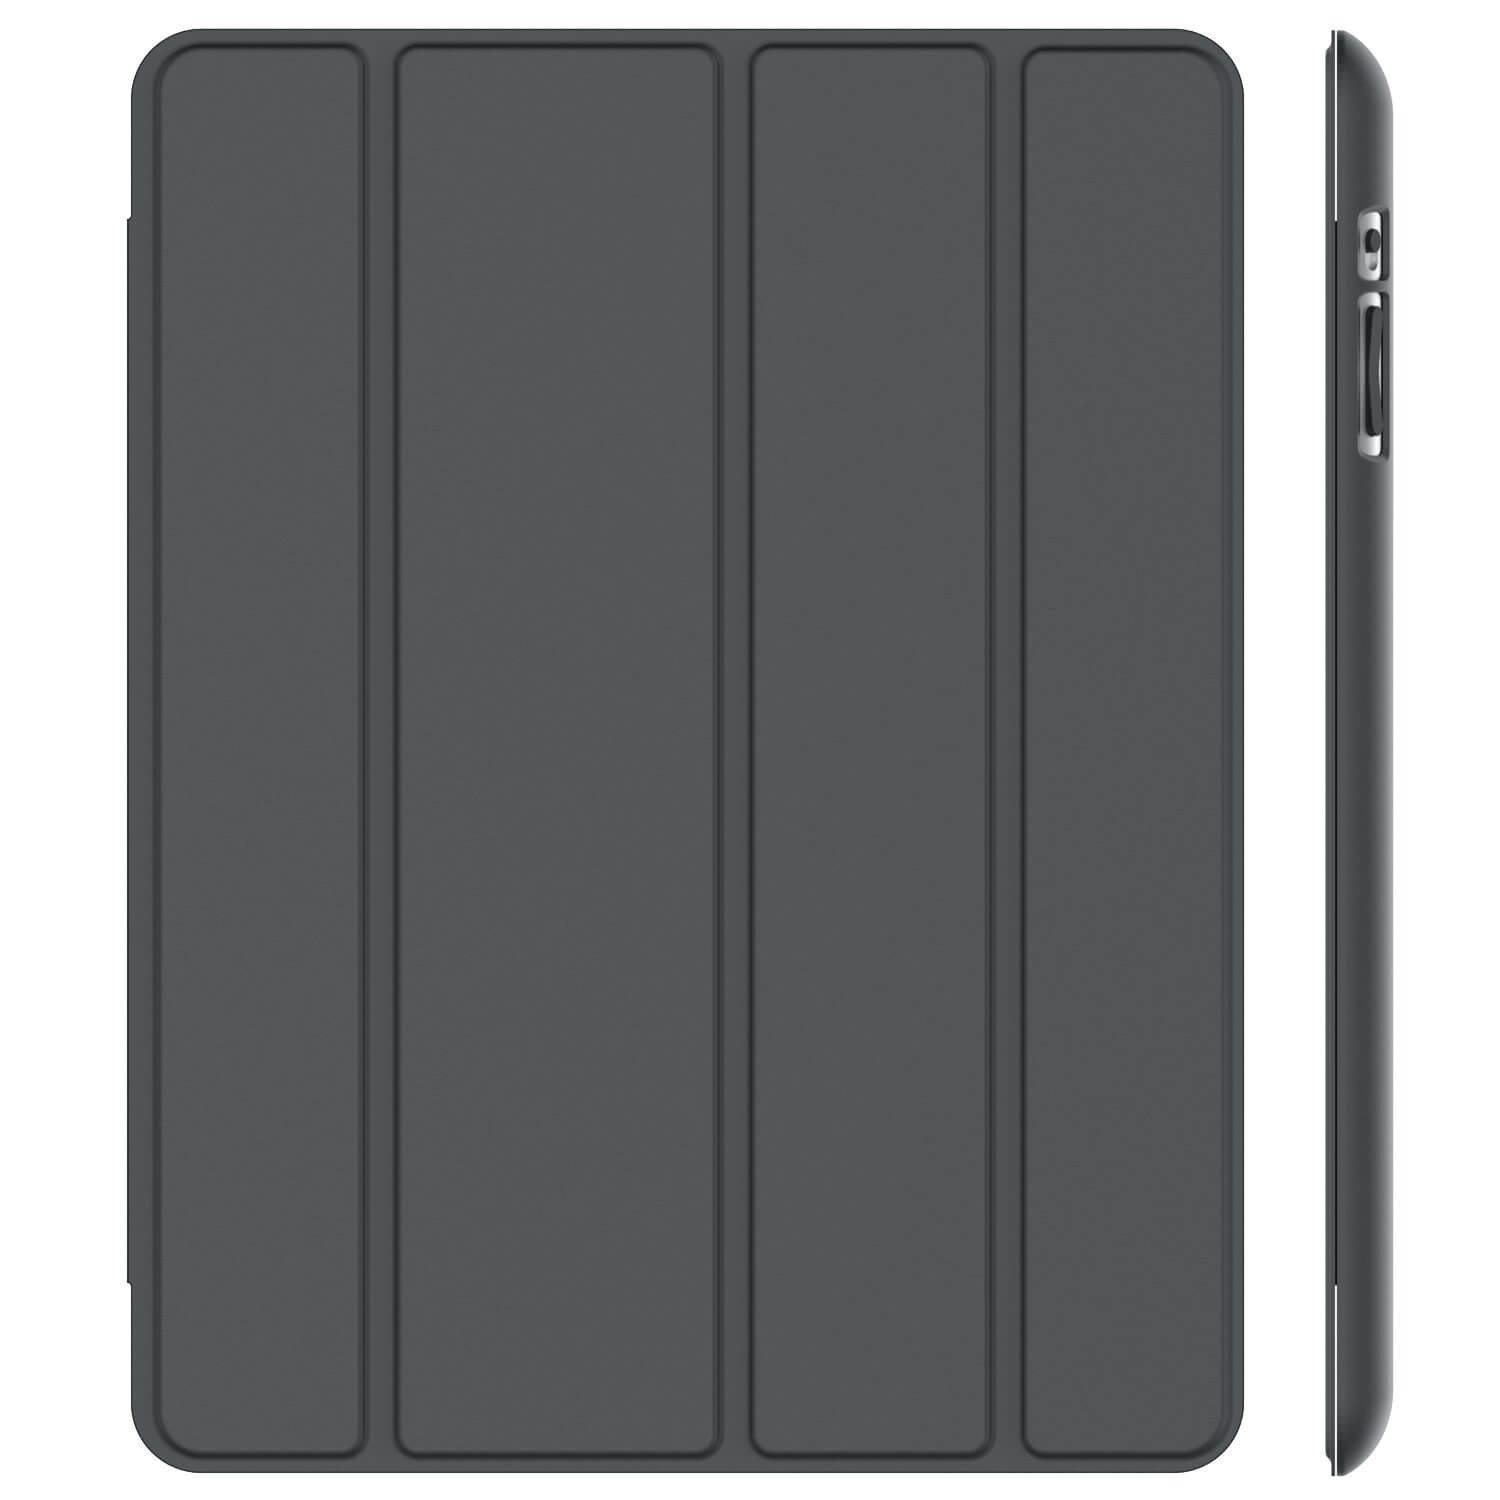 Smart cover met hard case iPad 2/3/4 zwart